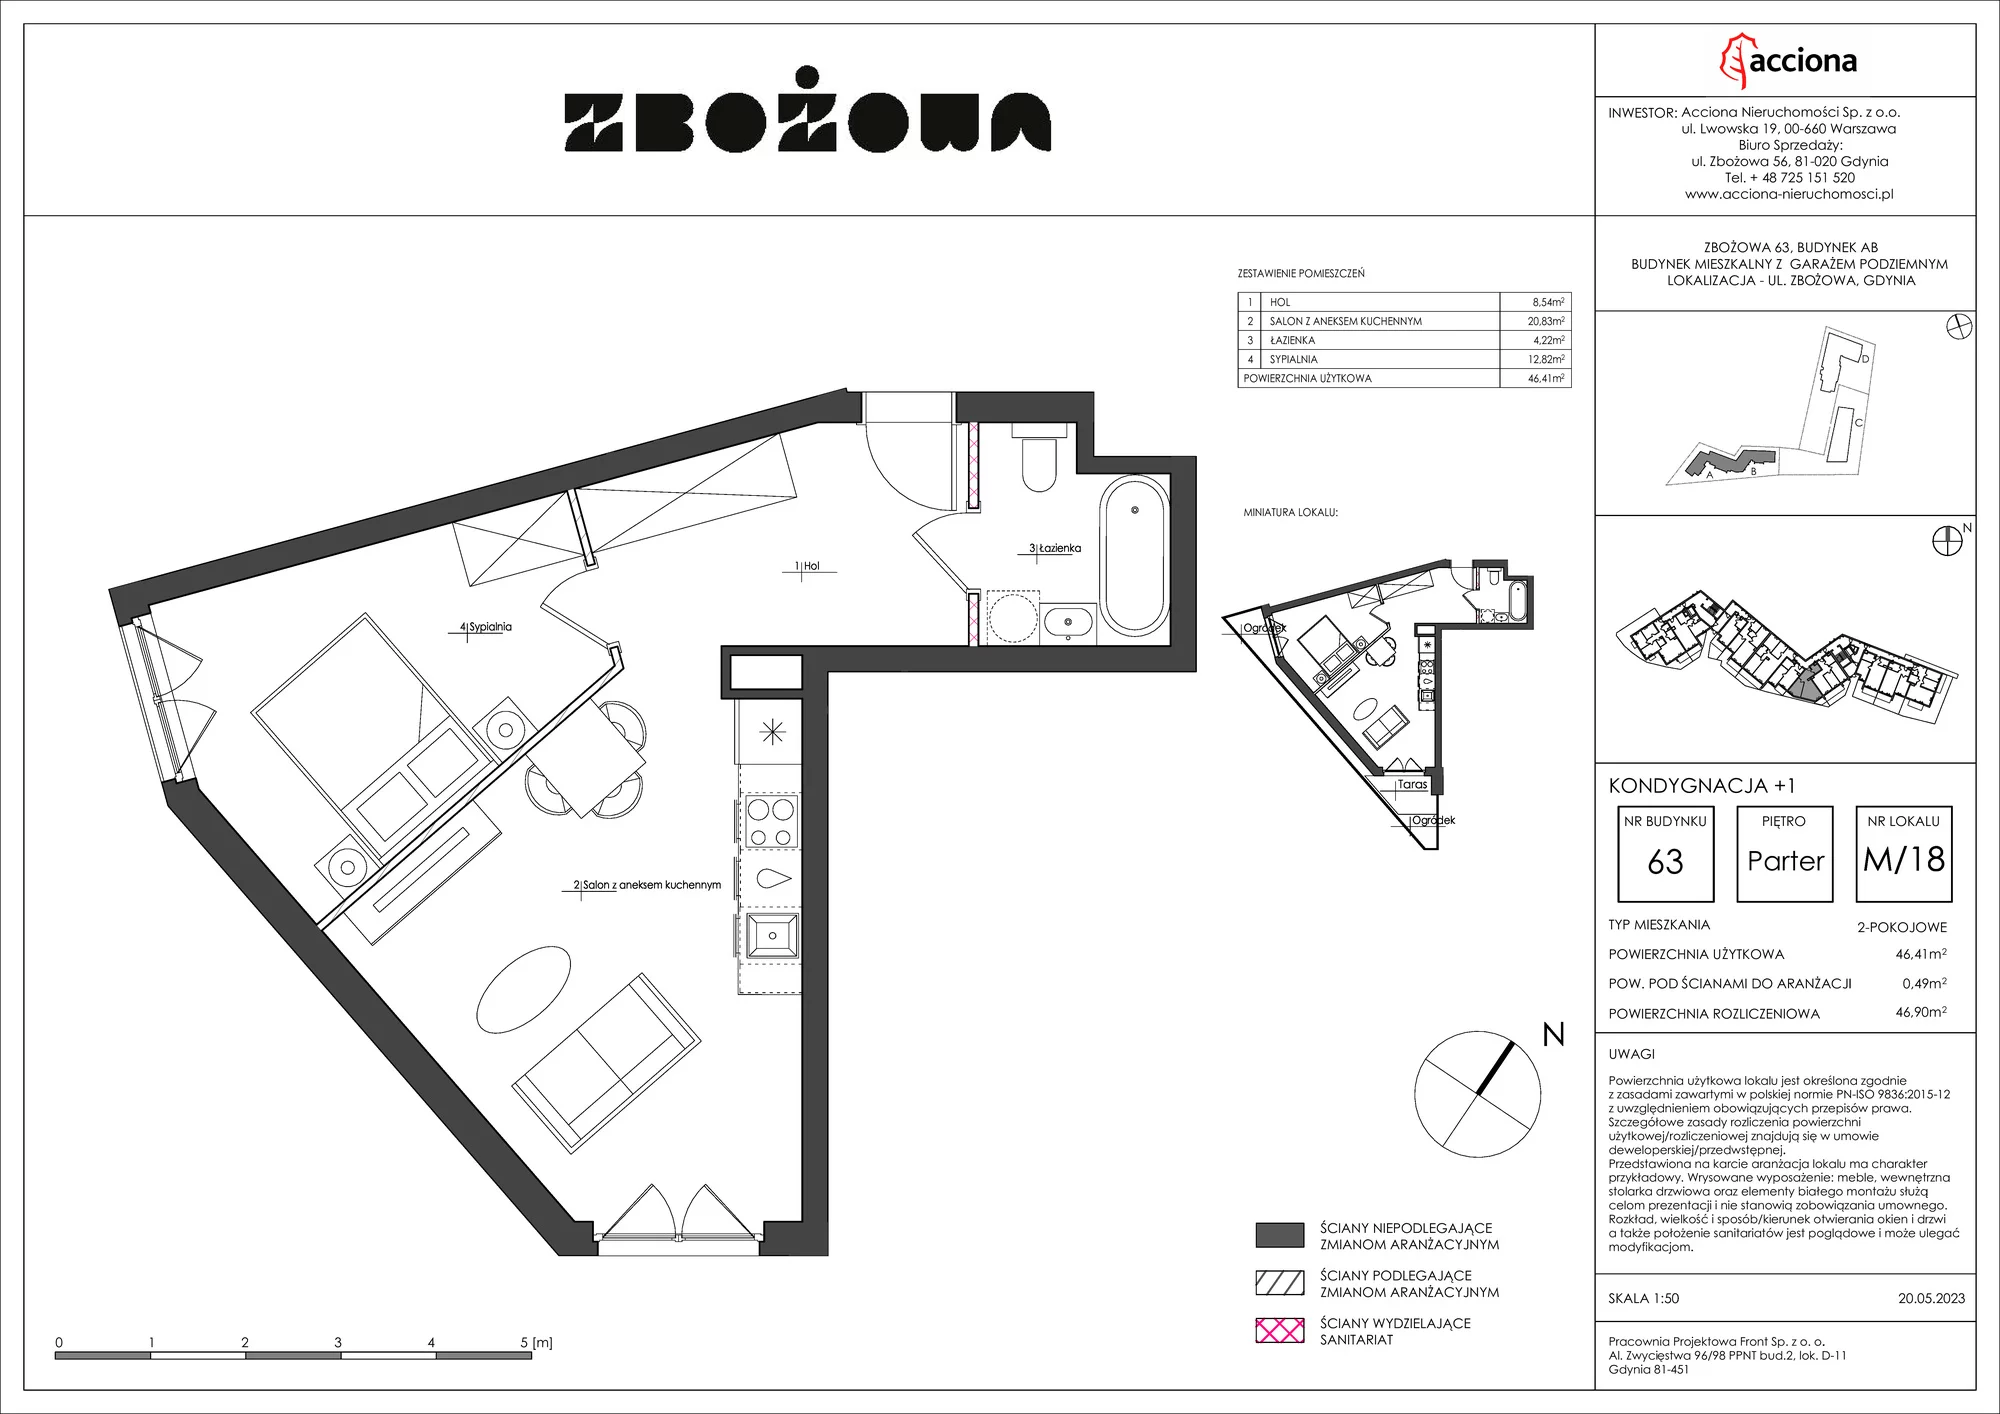 Mieszkanie 46,90 m², parter, oferta nr 63.18, Zbożowa, Gdynia, Cisowa, ul. Zbożowa